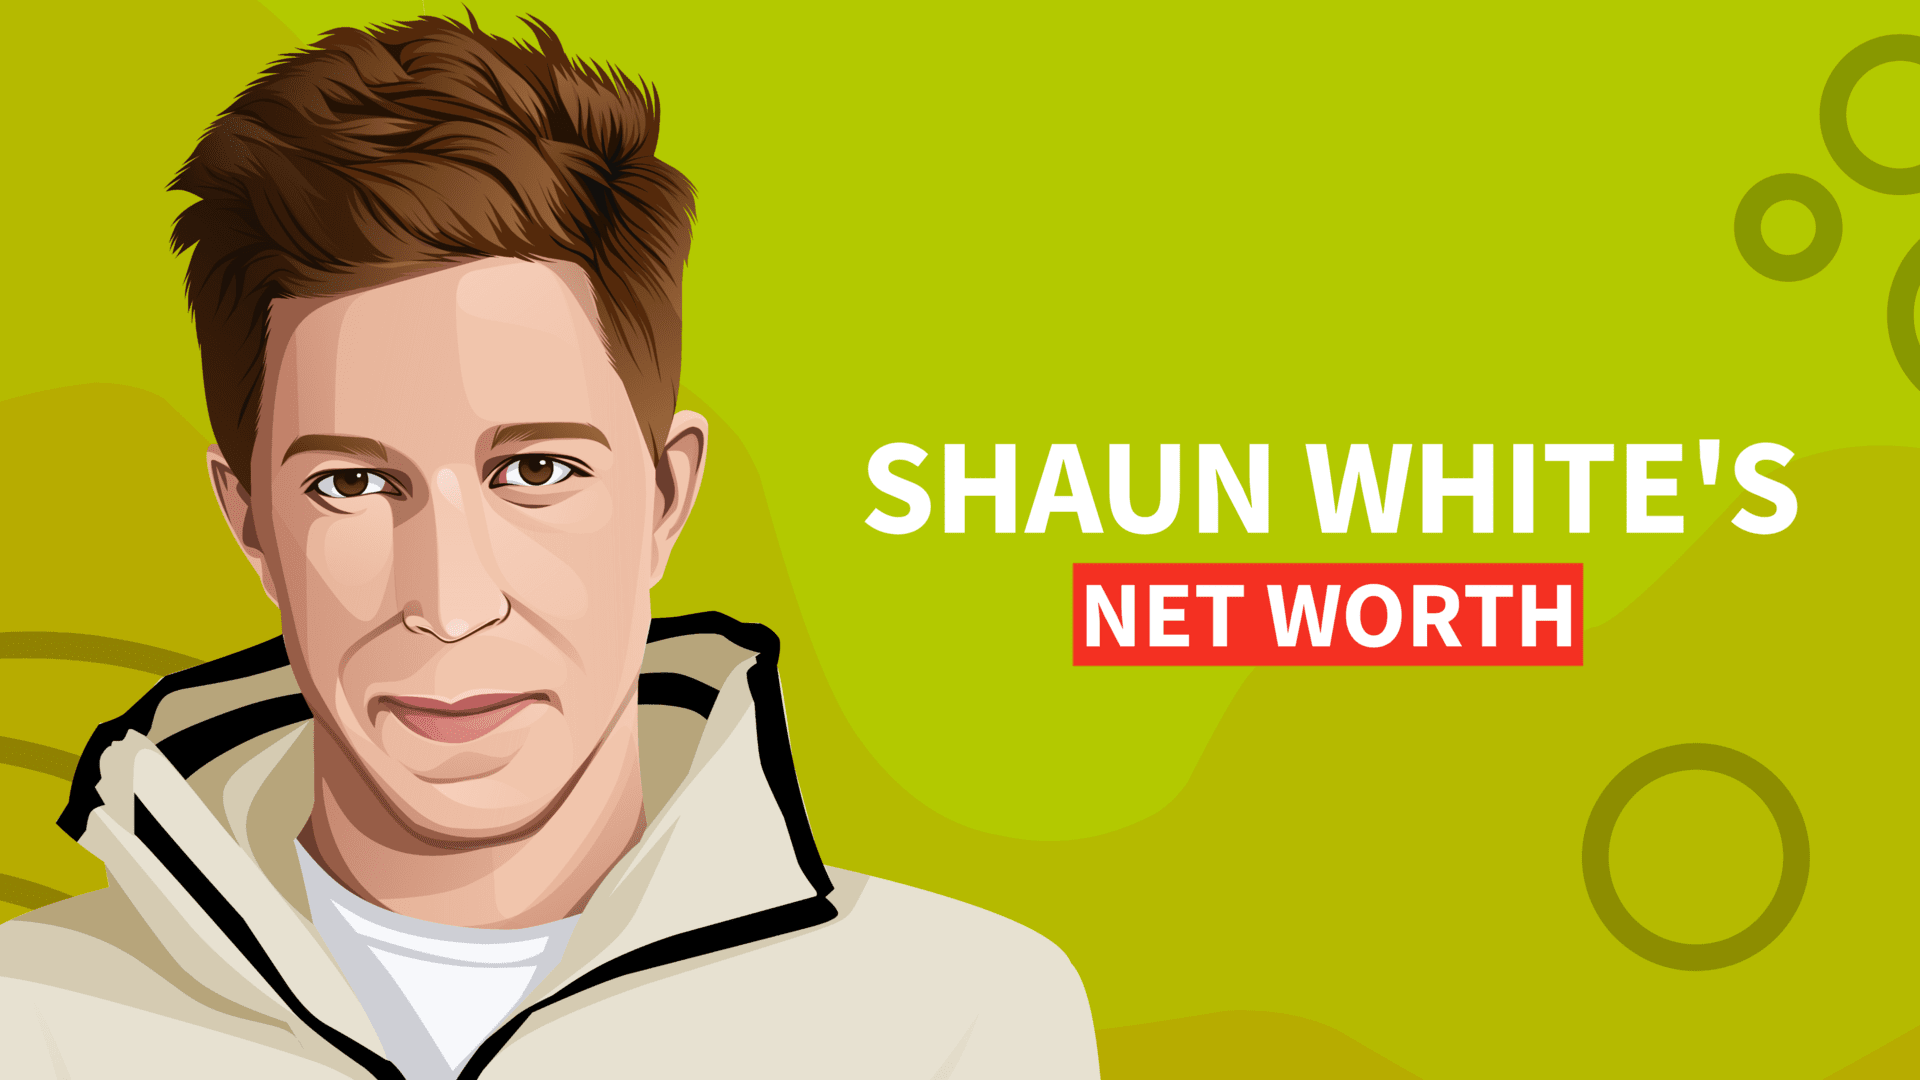 Shaun White's Net Worth and Inspiring Story